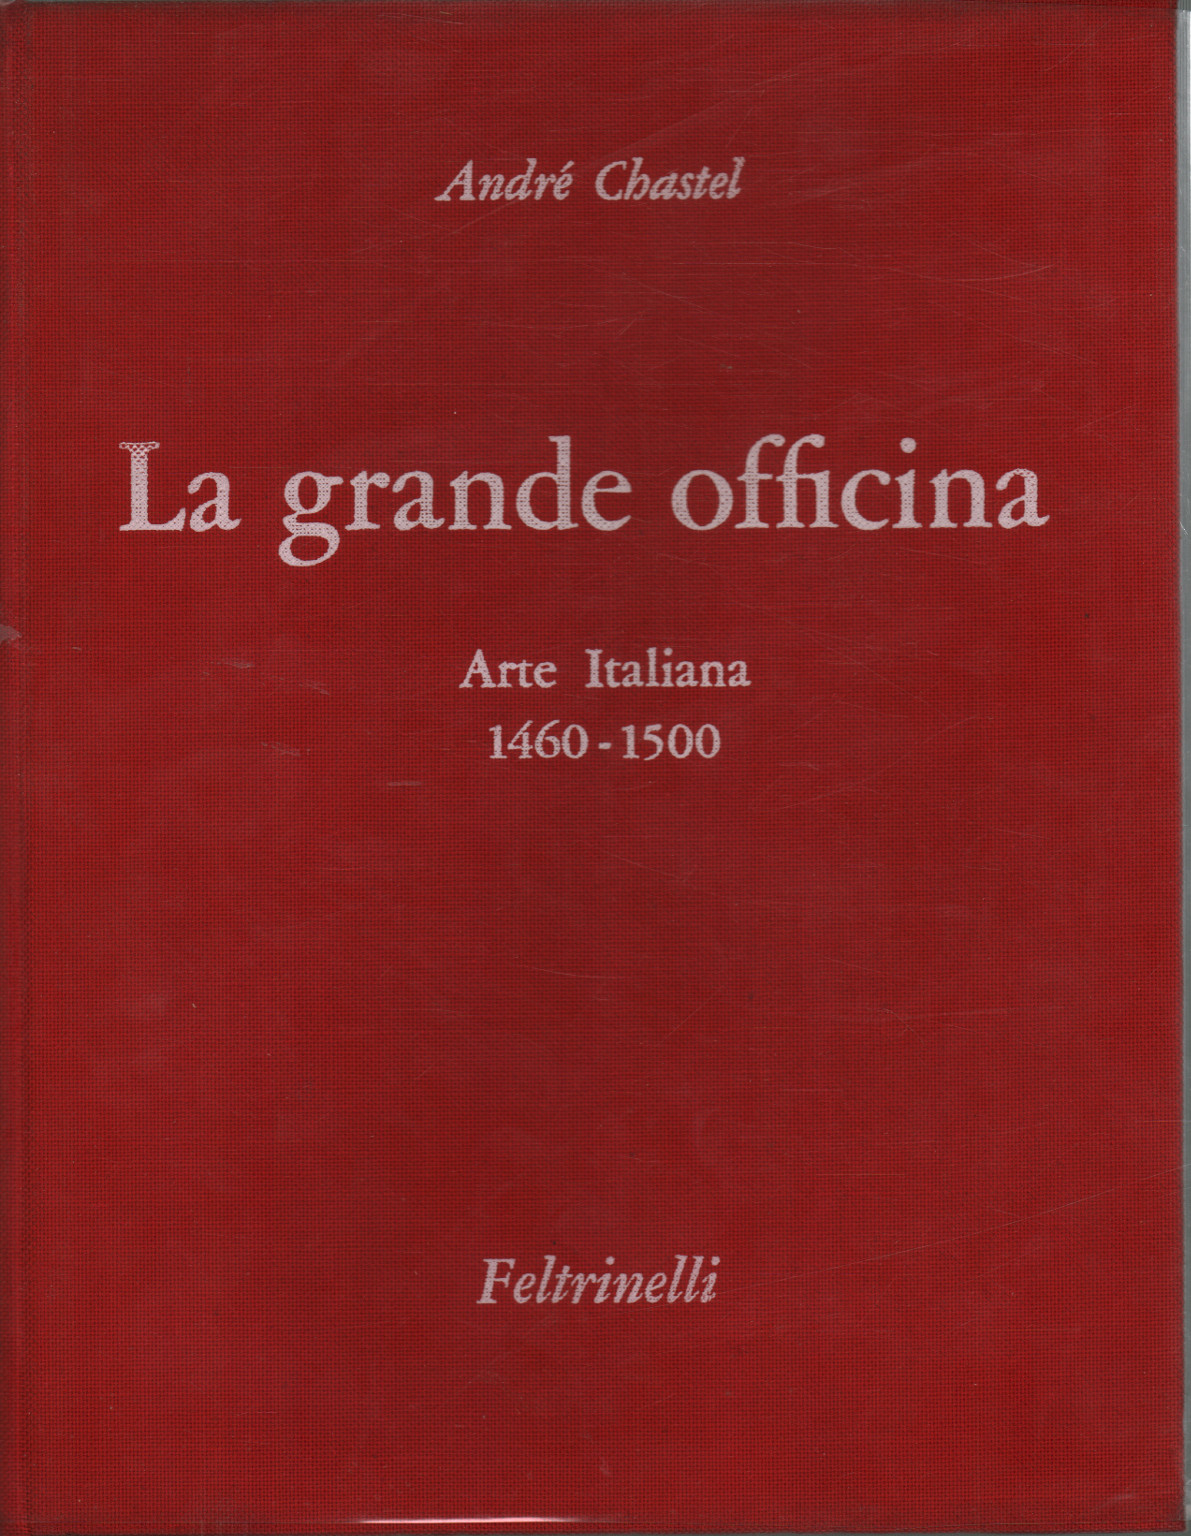 La grande officina. Arte Italiana 1460-1500, André Chastel